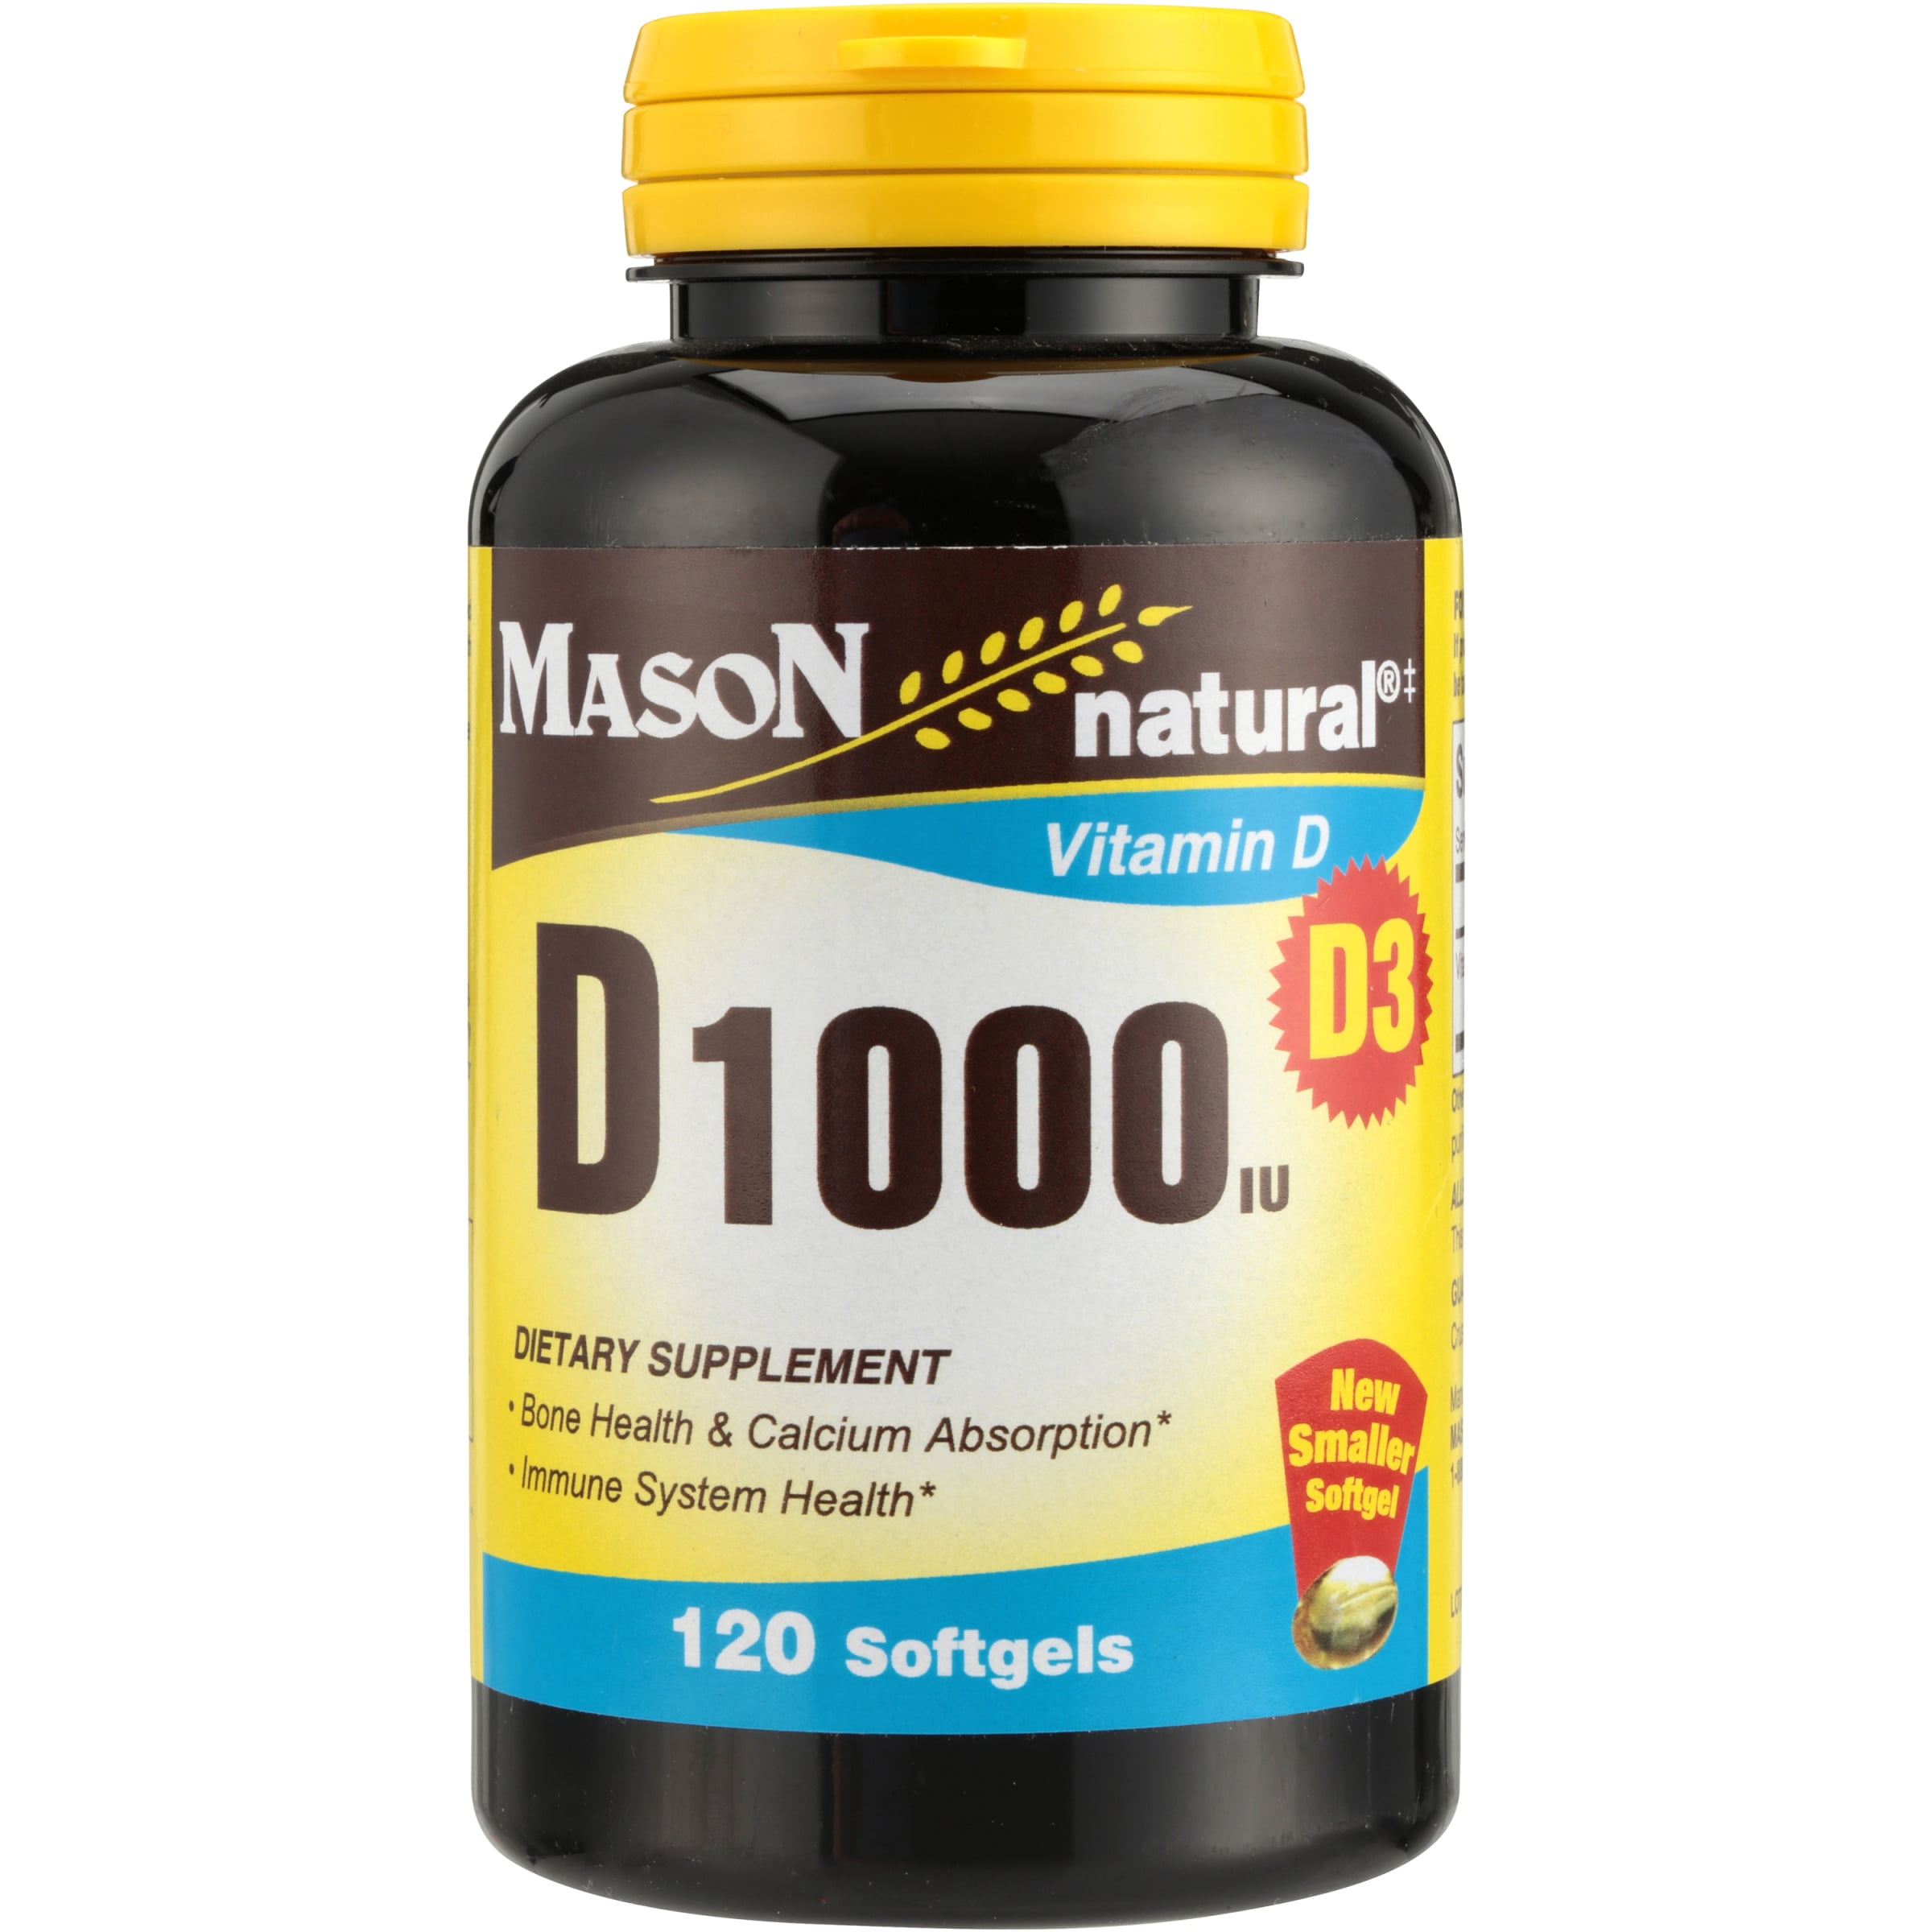 Mason Natural Vitamin D3 1000 IU Softgels 120 ea - Walmart.com ...